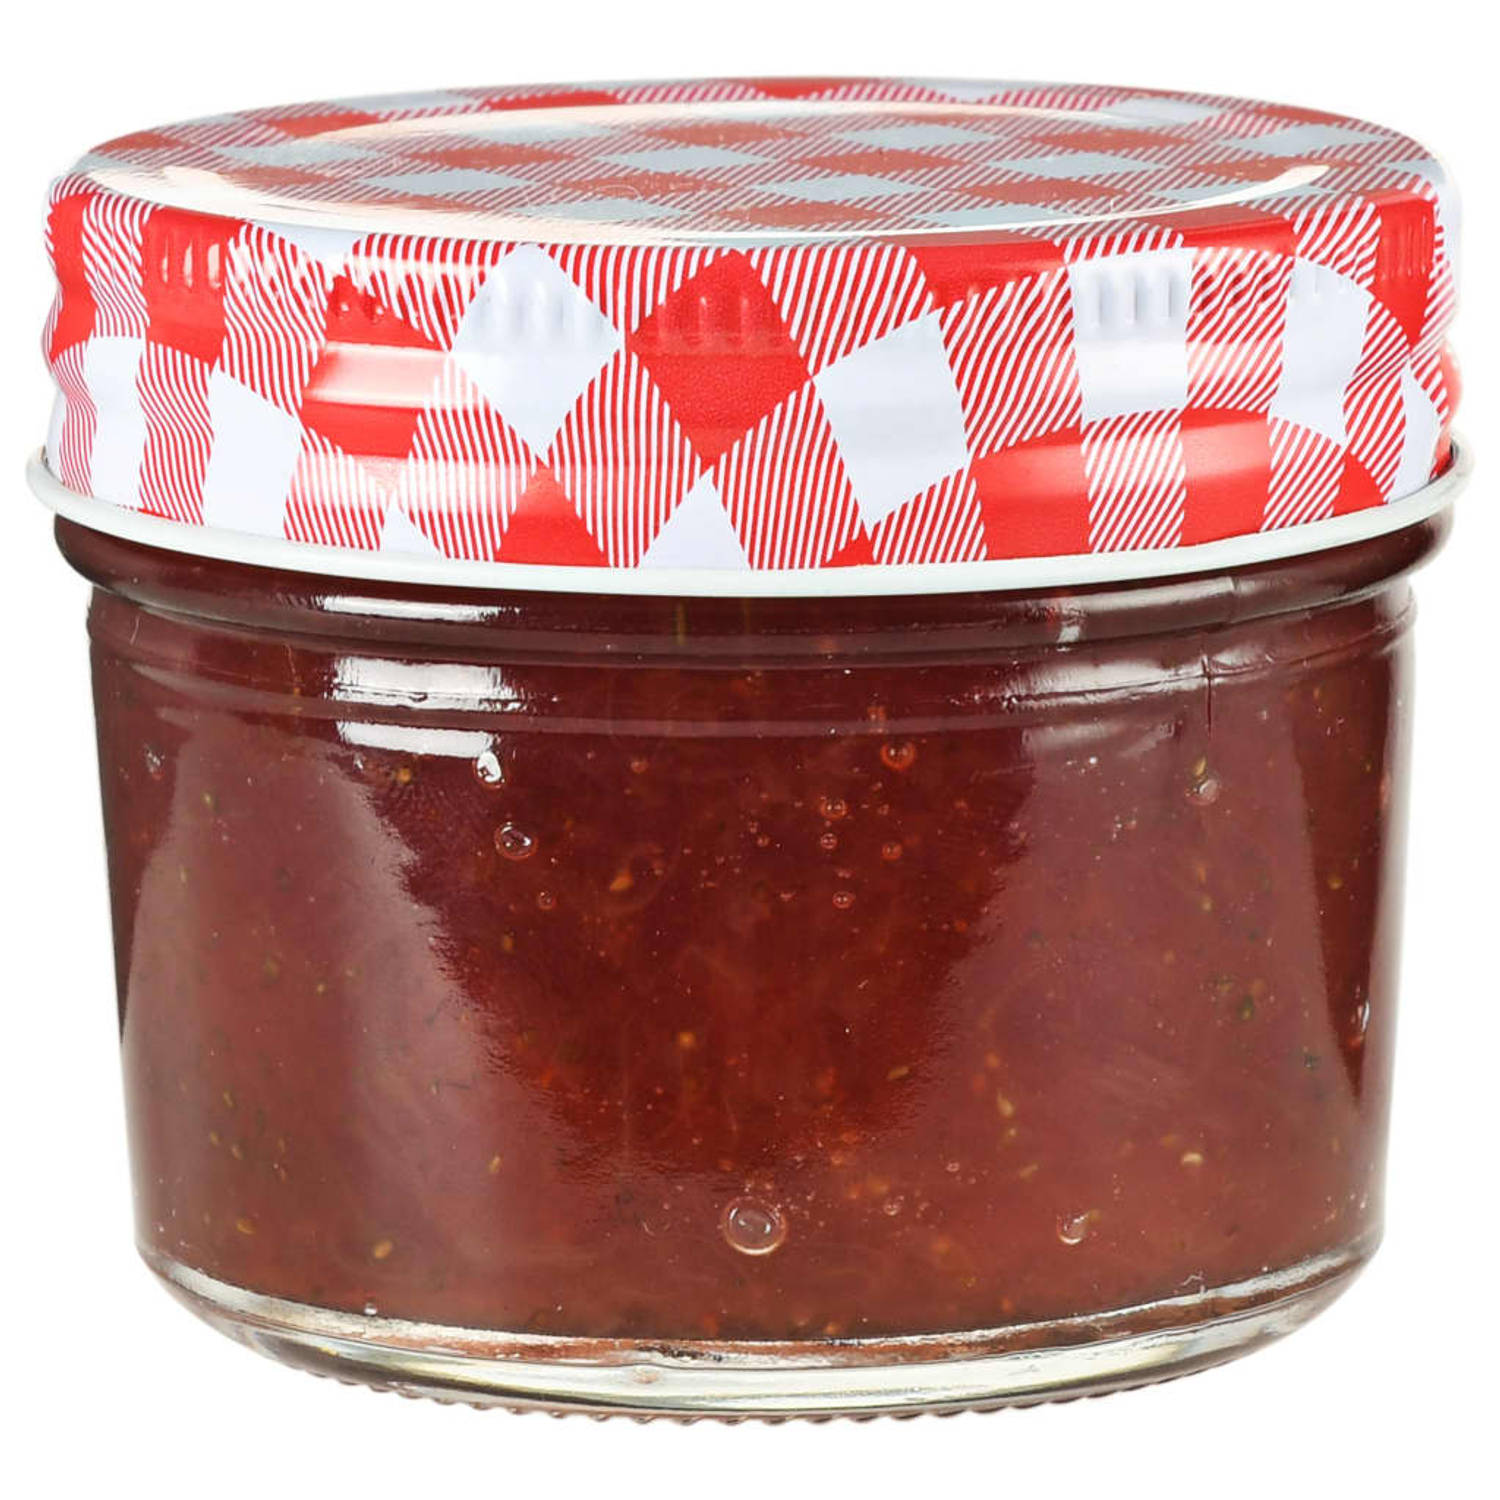 The Living Store Glazen jampotjes - 110 ml - Ideaal voor chutney - jam - augurken - Doorzichtig glas - Brede opening - Rood-witte deksel - 48 stuks